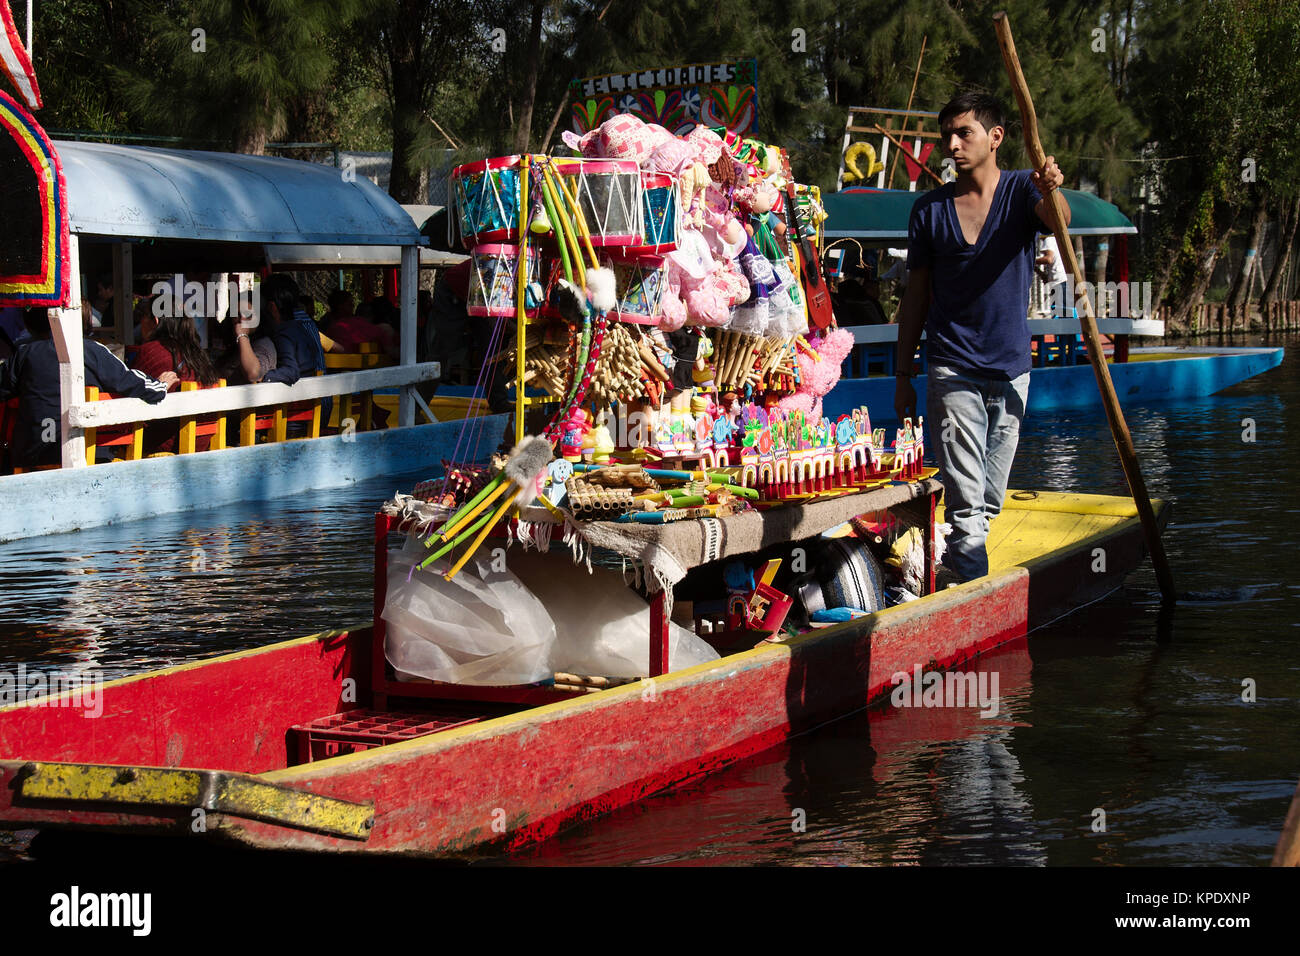 Xochimilco, Mexiko City, Mexiko - 2017: Ein Mann auf einer trajinera (ein lokaler Art des Bootes) verkauft Spielzeug von Menschen in anderen trajineras auf einer Stadt Kanal. Stockfoto